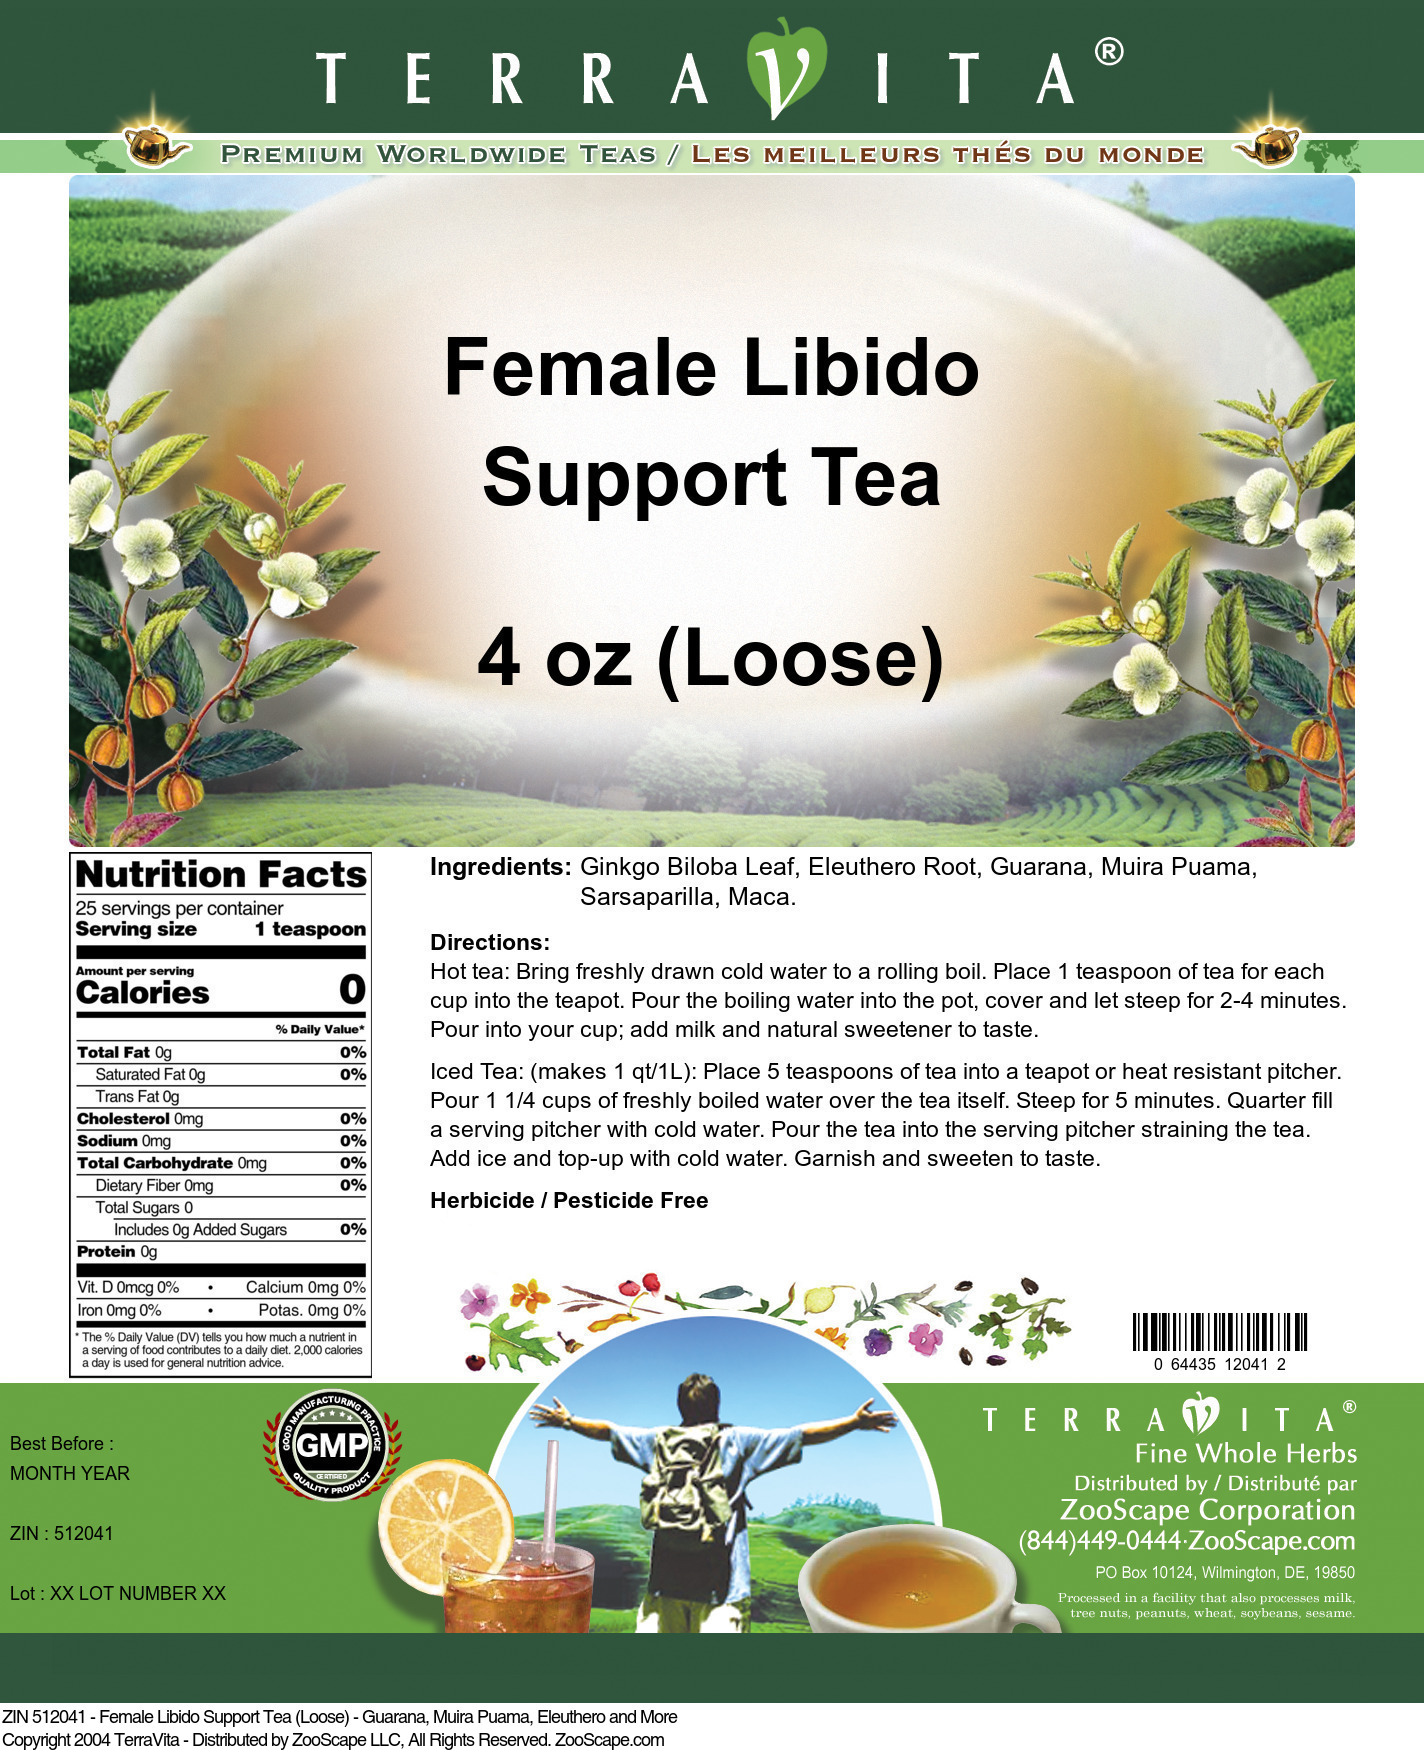 Female Libido Support Tea (Loose) - Guarana, Muira Puama, Eleuthero and More - Label